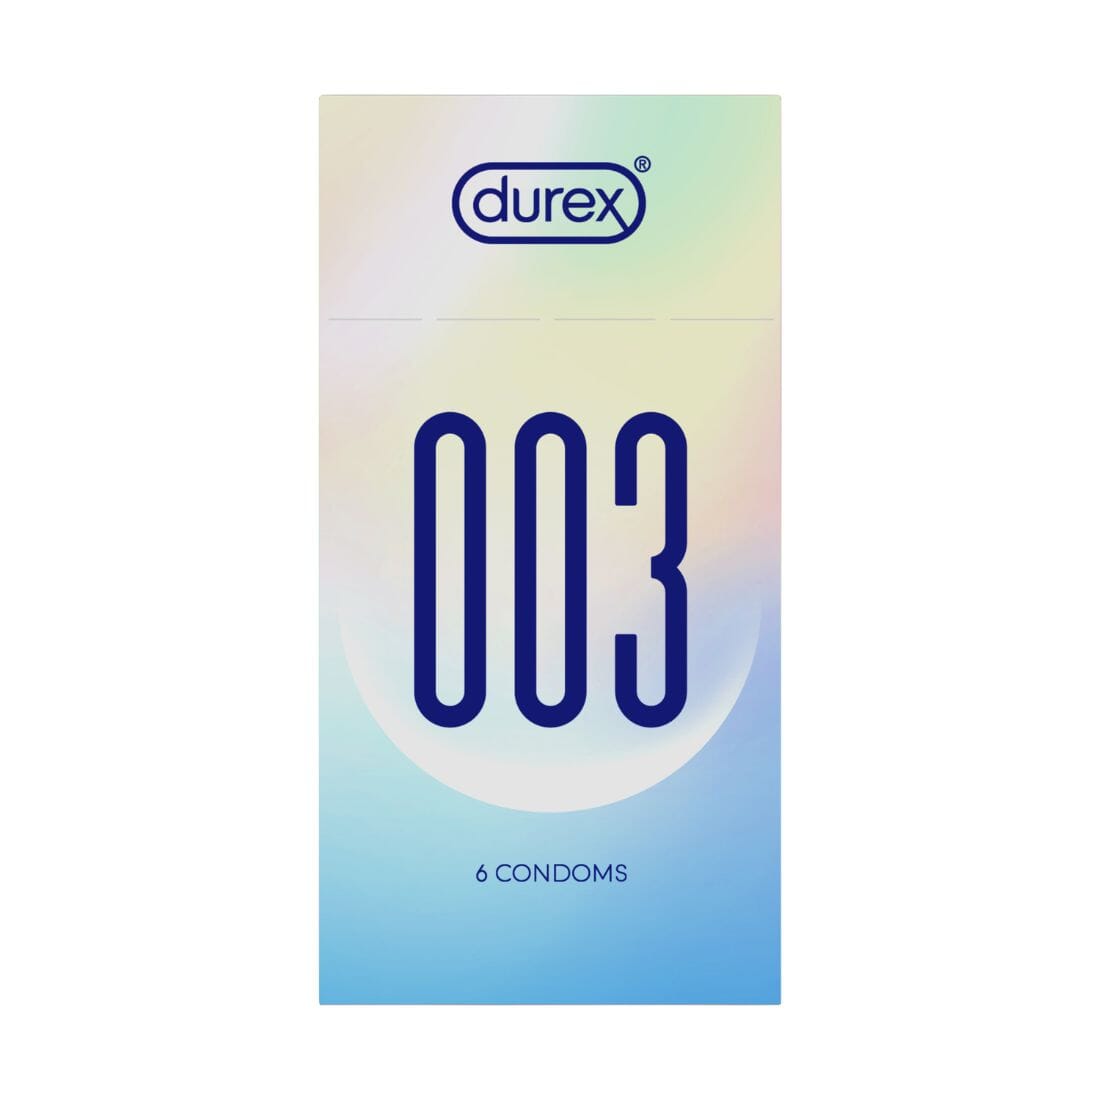 DUREX 003 水性聚氨酯安全套 6 片裝 購買